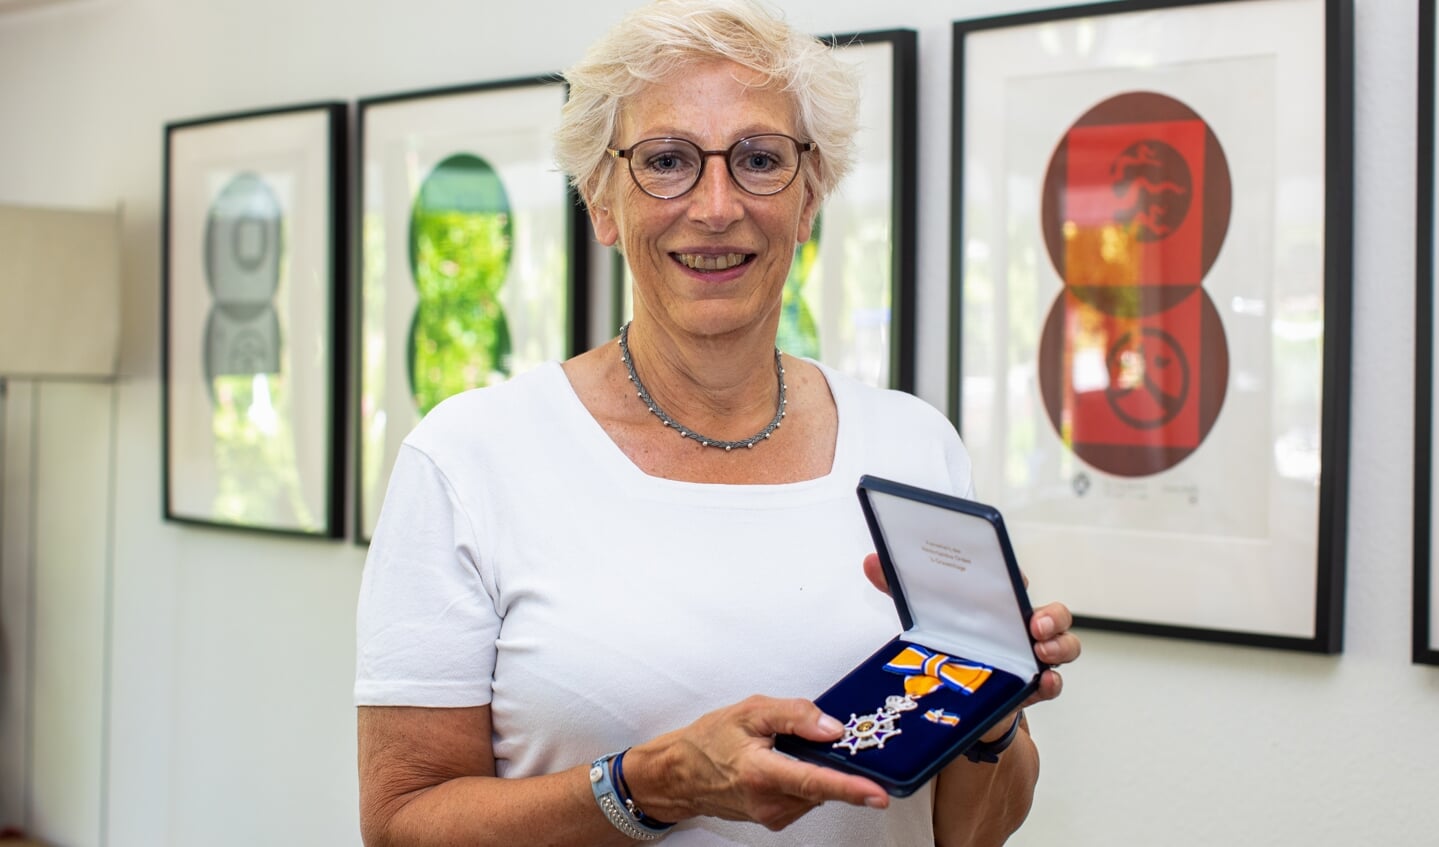 Nienke Feenstra toont trots haar onderscheiding Ridder in de Orde van Oranje- Nassau.